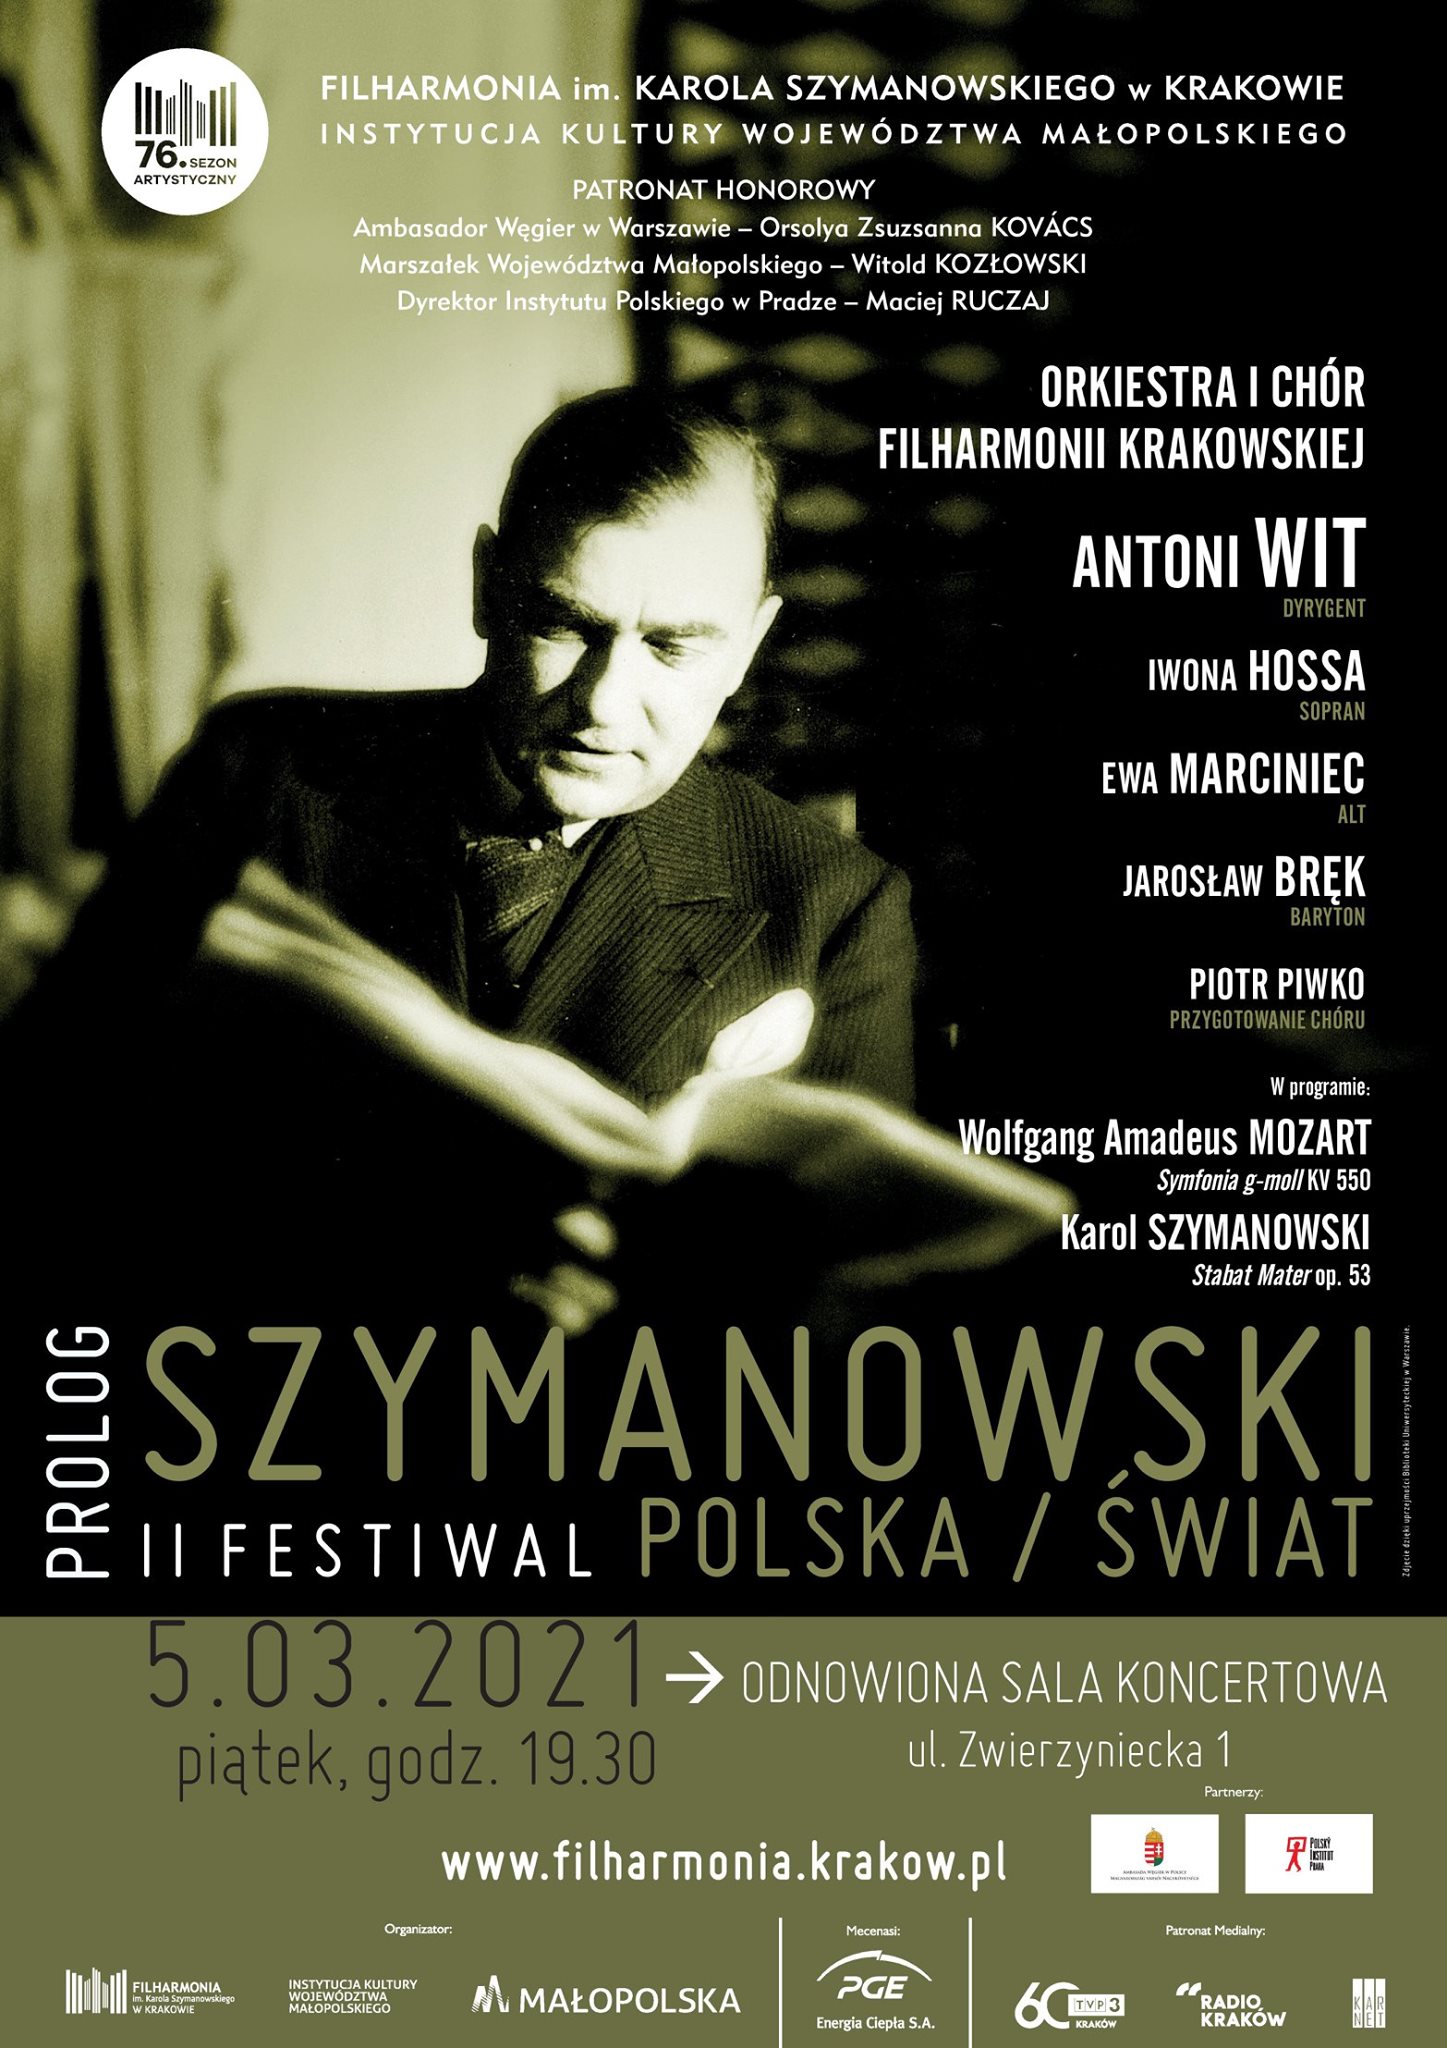 Prolog Festiwalu Szymanowski/Polska/Świat